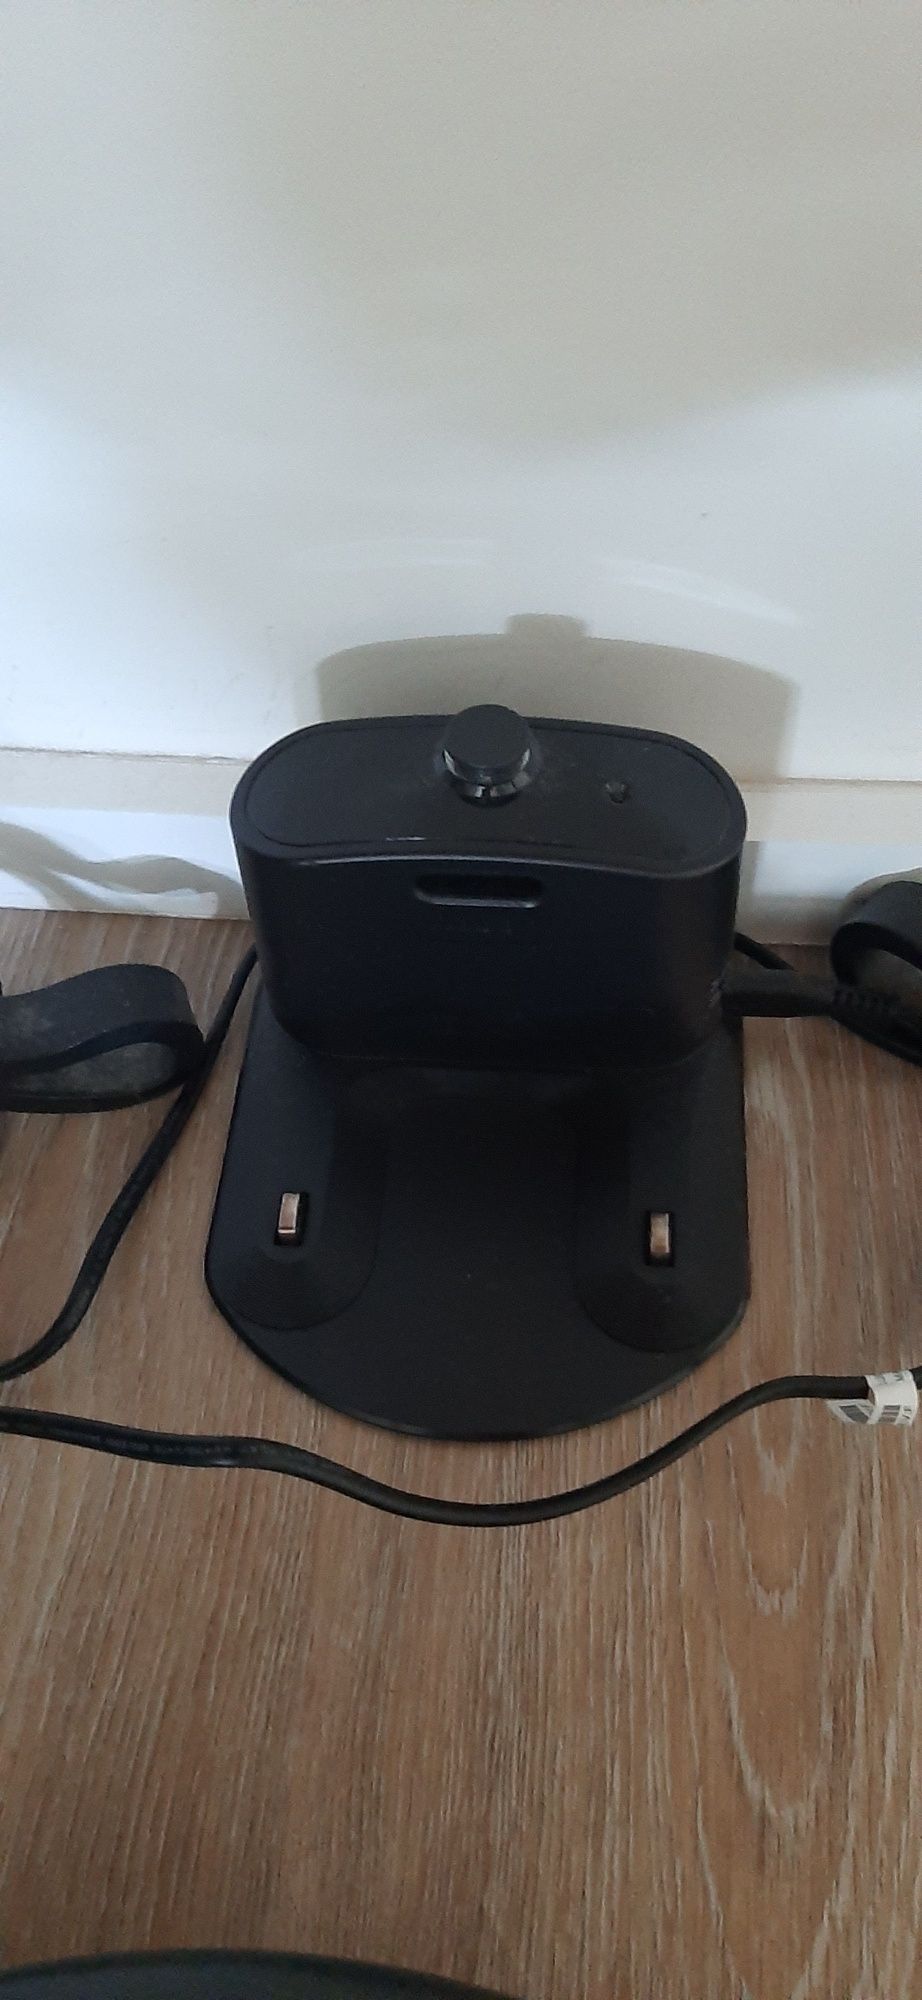 Aspirador Robô IROBOT Roomba 616, côr preto e cinzento.